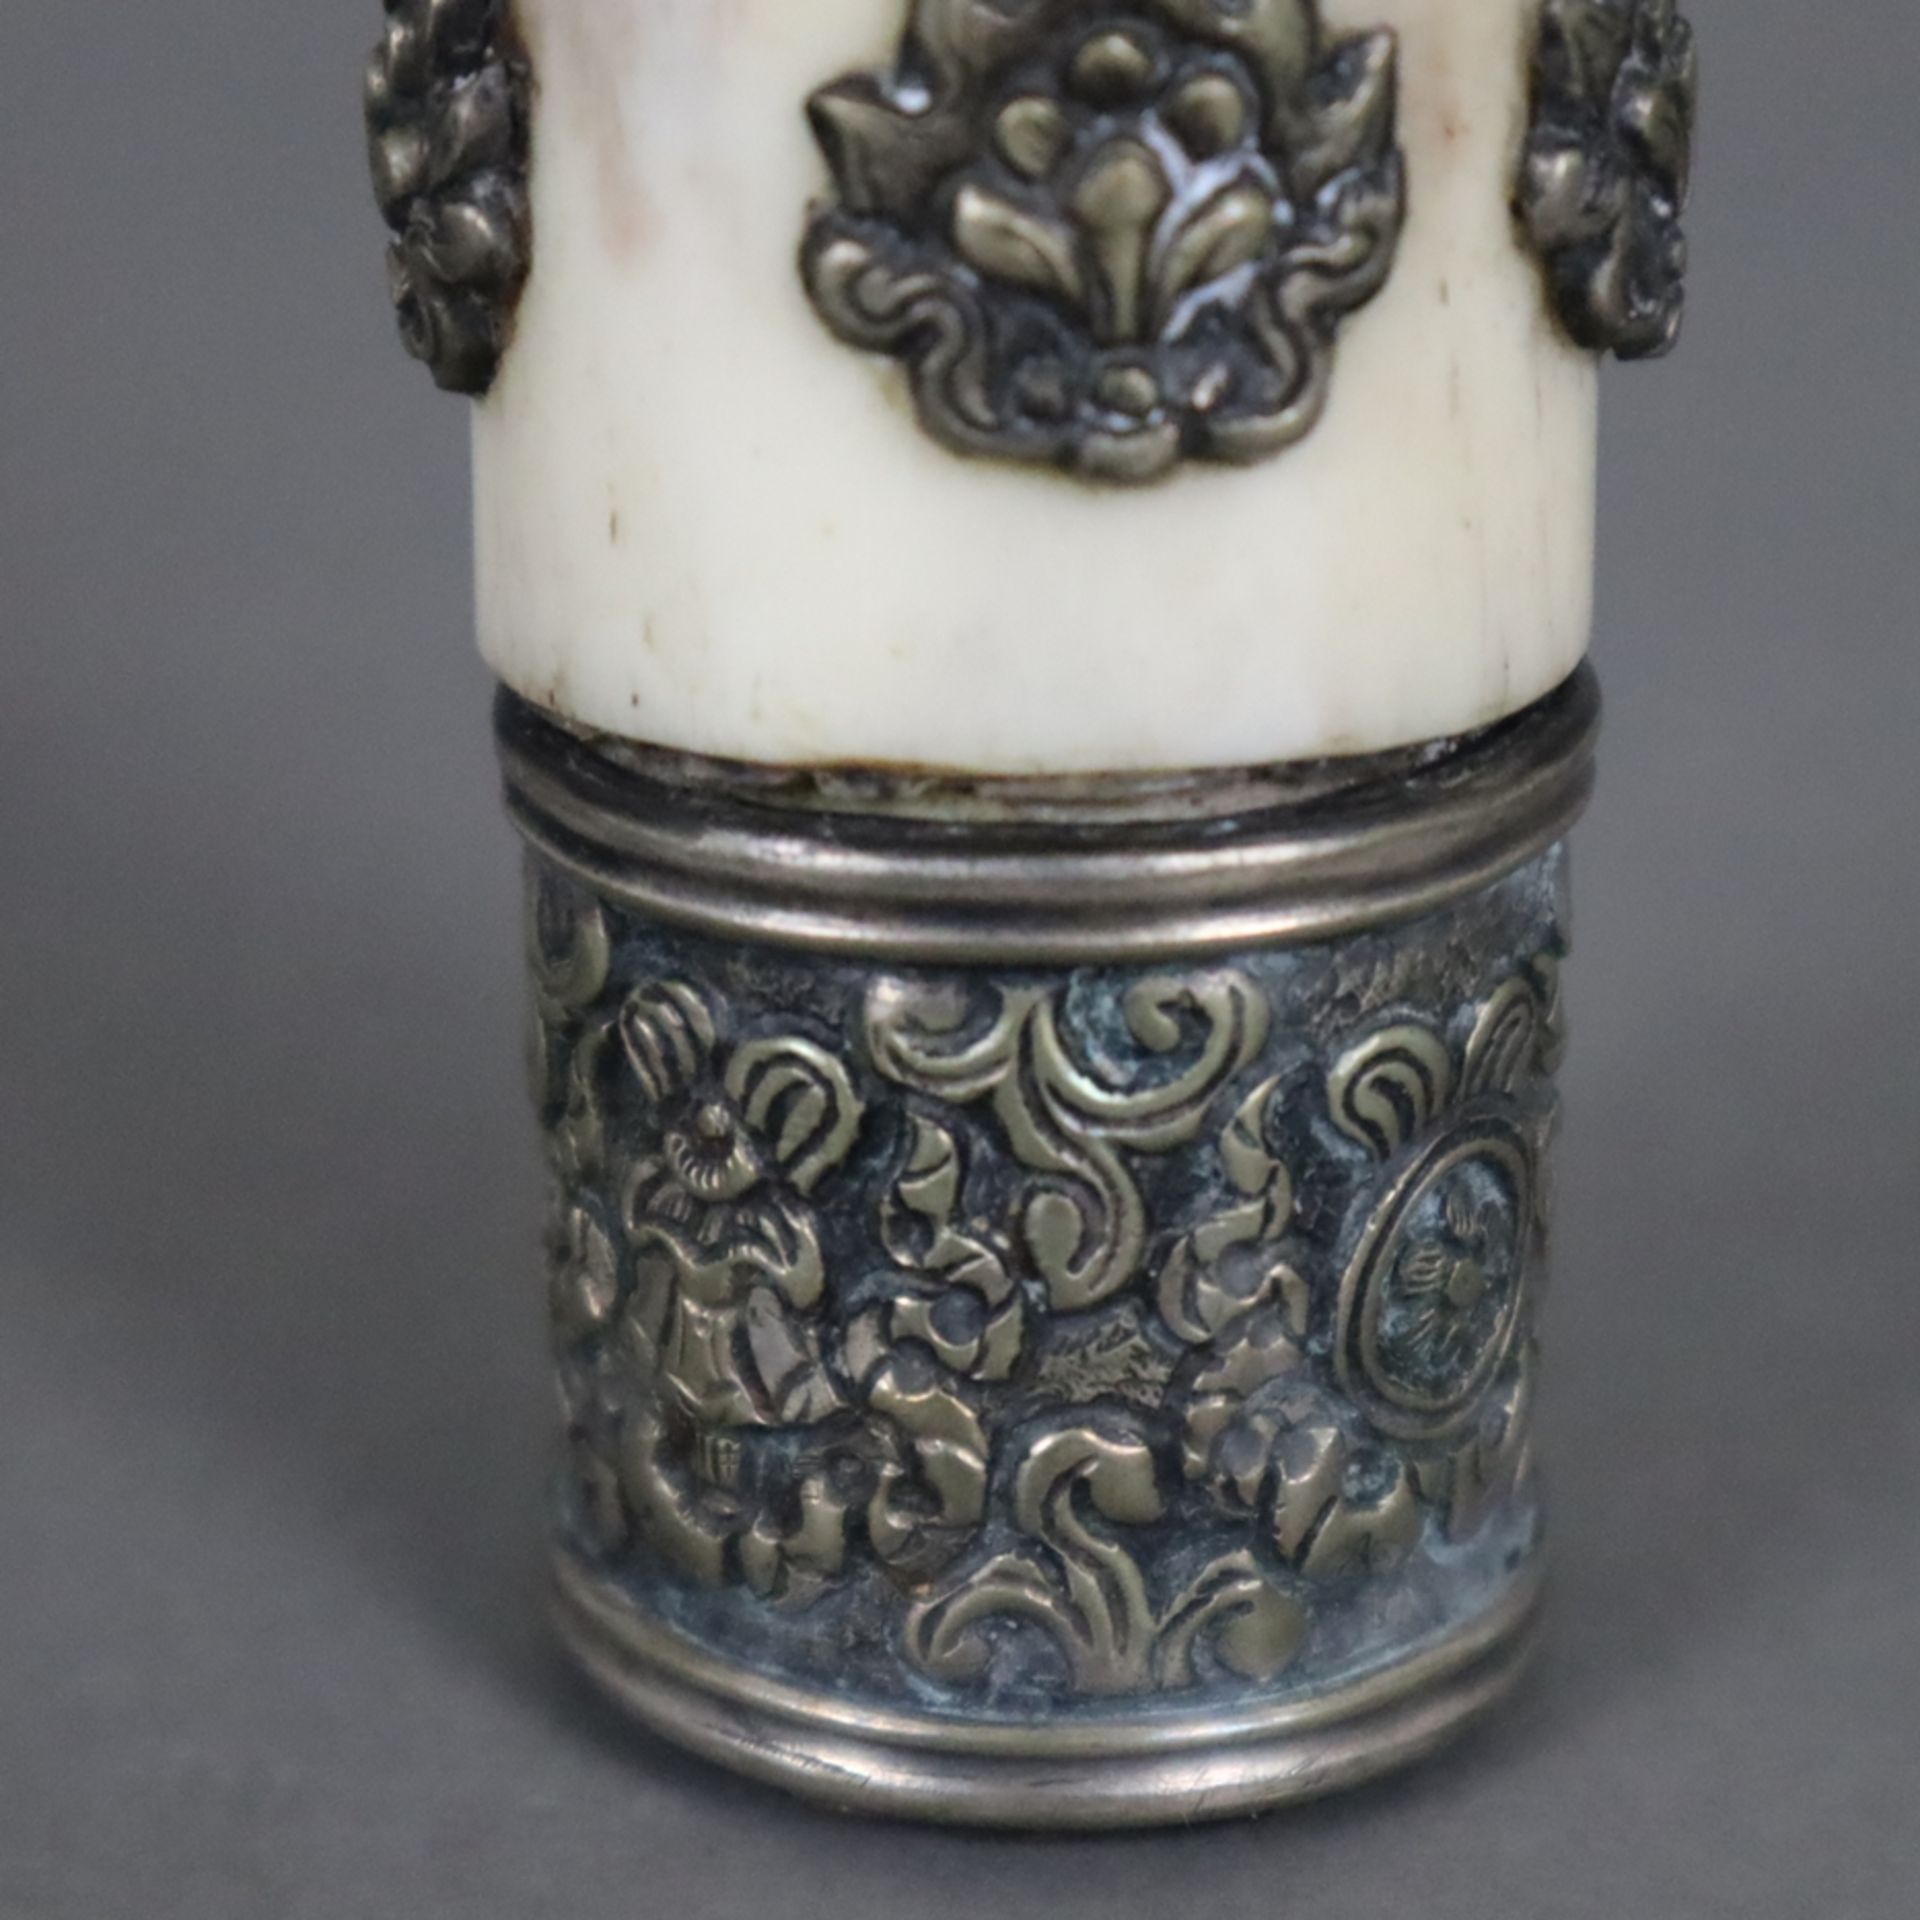 Siegel/Petschaft - Nordindien 19./20.Jh., Bein / ornamentierte Silberbeschläge mit Ashtamangala-Sym - Image 4 of 6